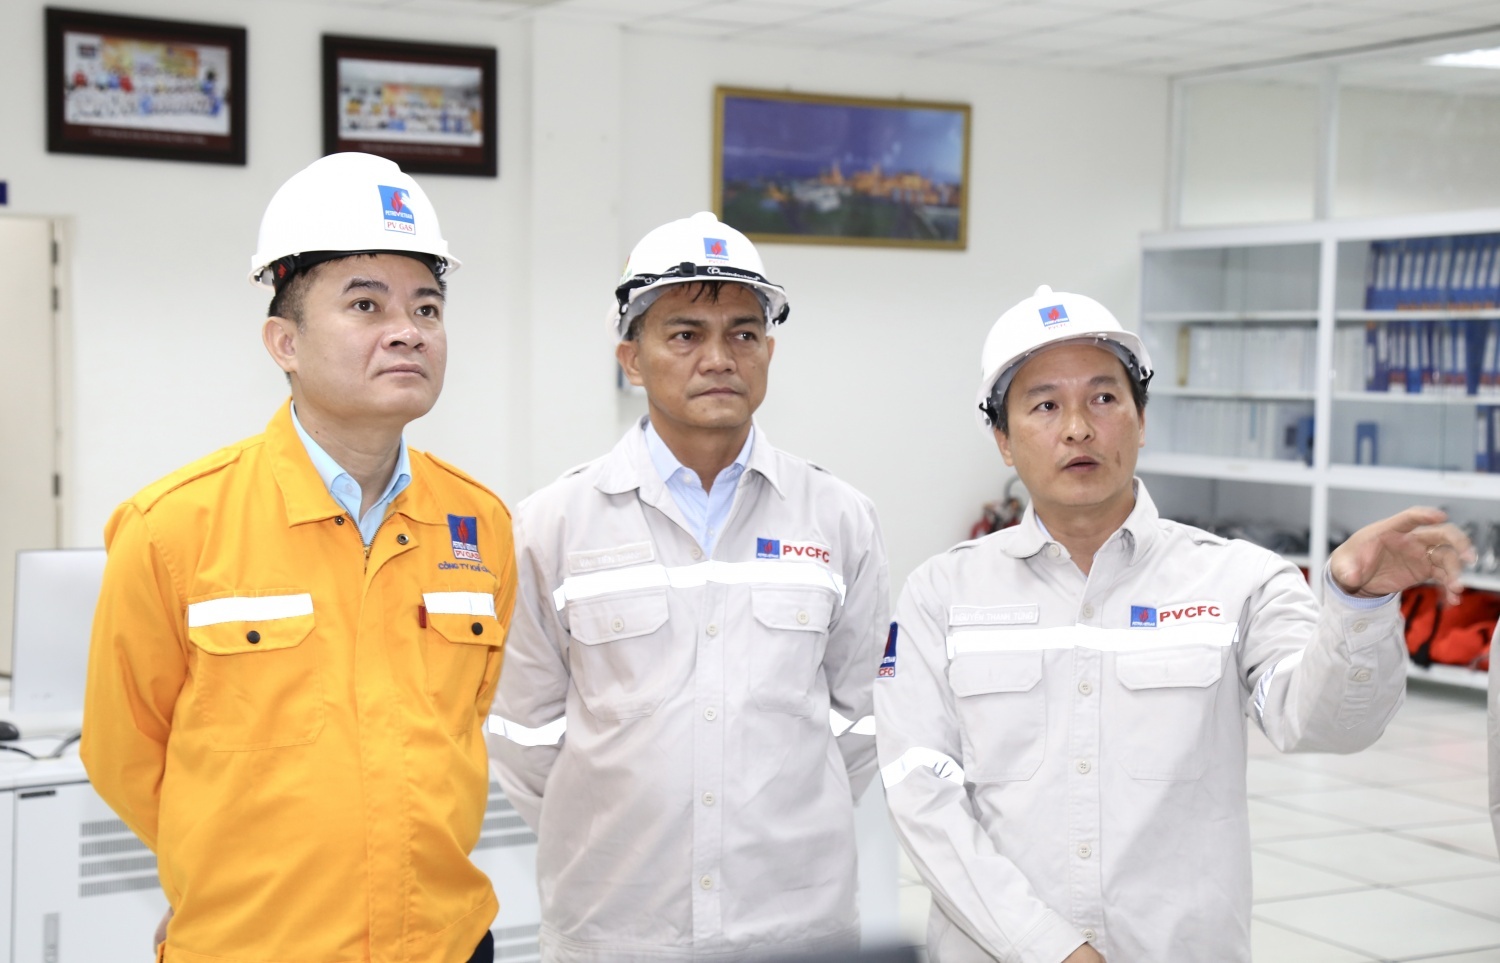 [PetroTimesTV] Tổng Giám đốc Petrovietnam Lê Ngọc Sơn làm việc tại Nhà máy Đạm Cà Mau